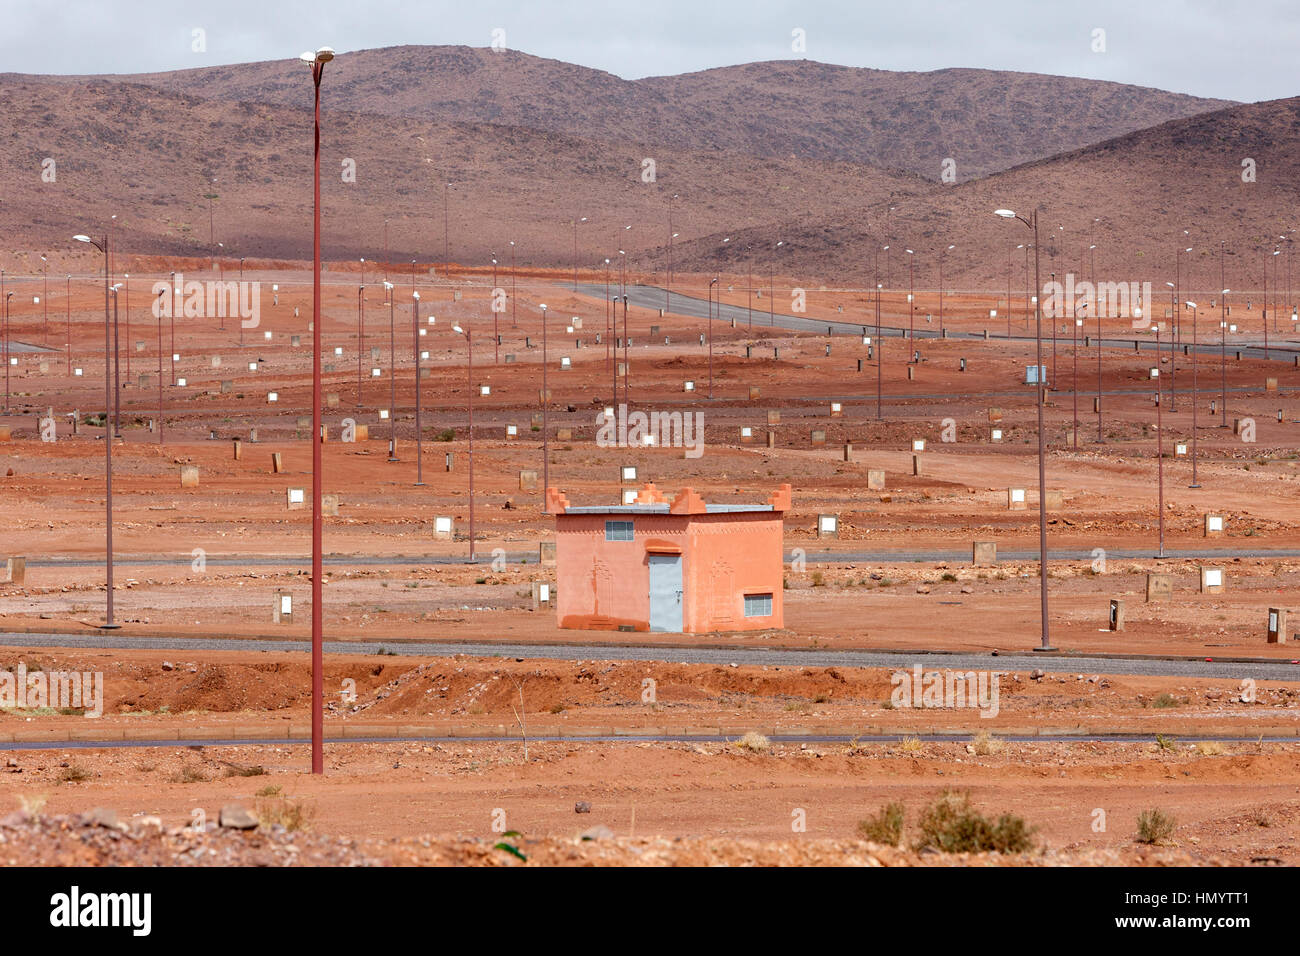 Ouarzazate, Marruecos. La planificación para el futuro desarrollo urbano. Foto de stock